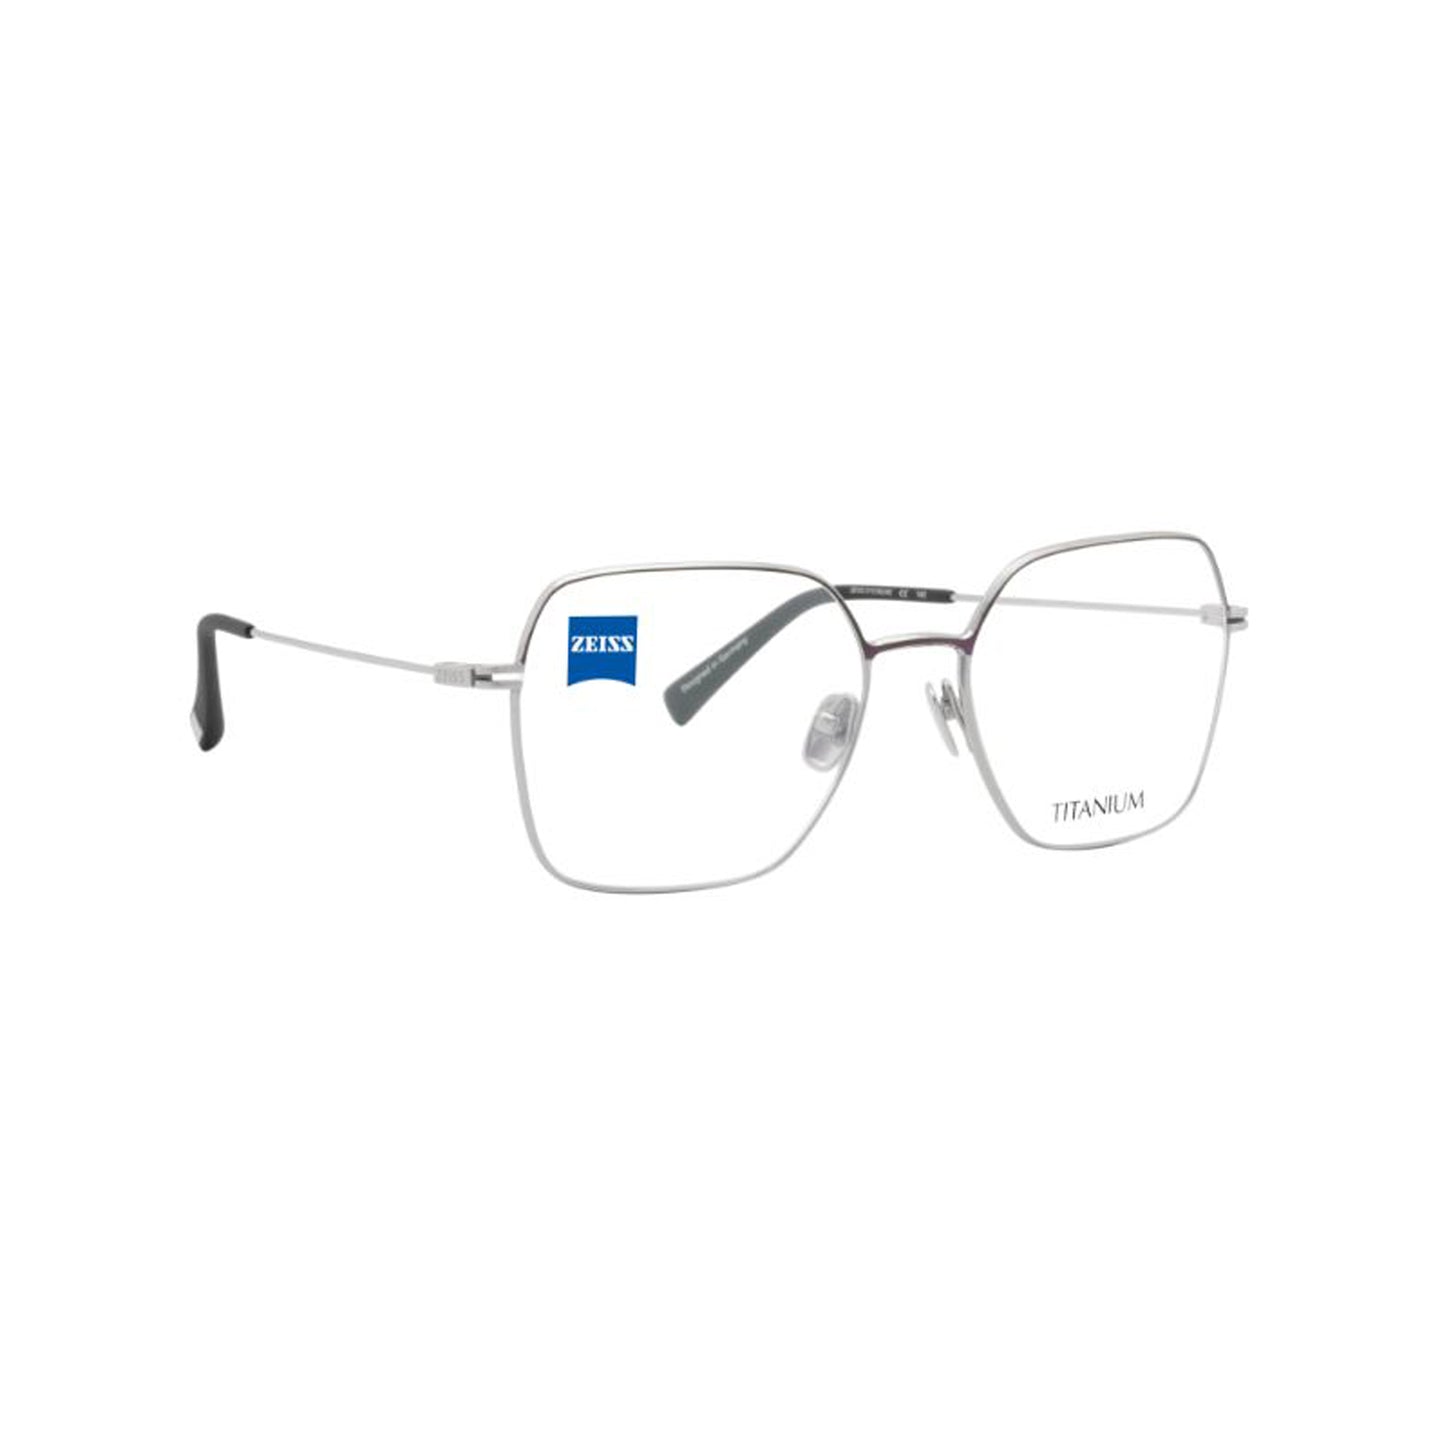 Zeiss Eyewear Silver Irregular Metal Full Rim Eyeglasses. Made in Germany ZS30021-Y22